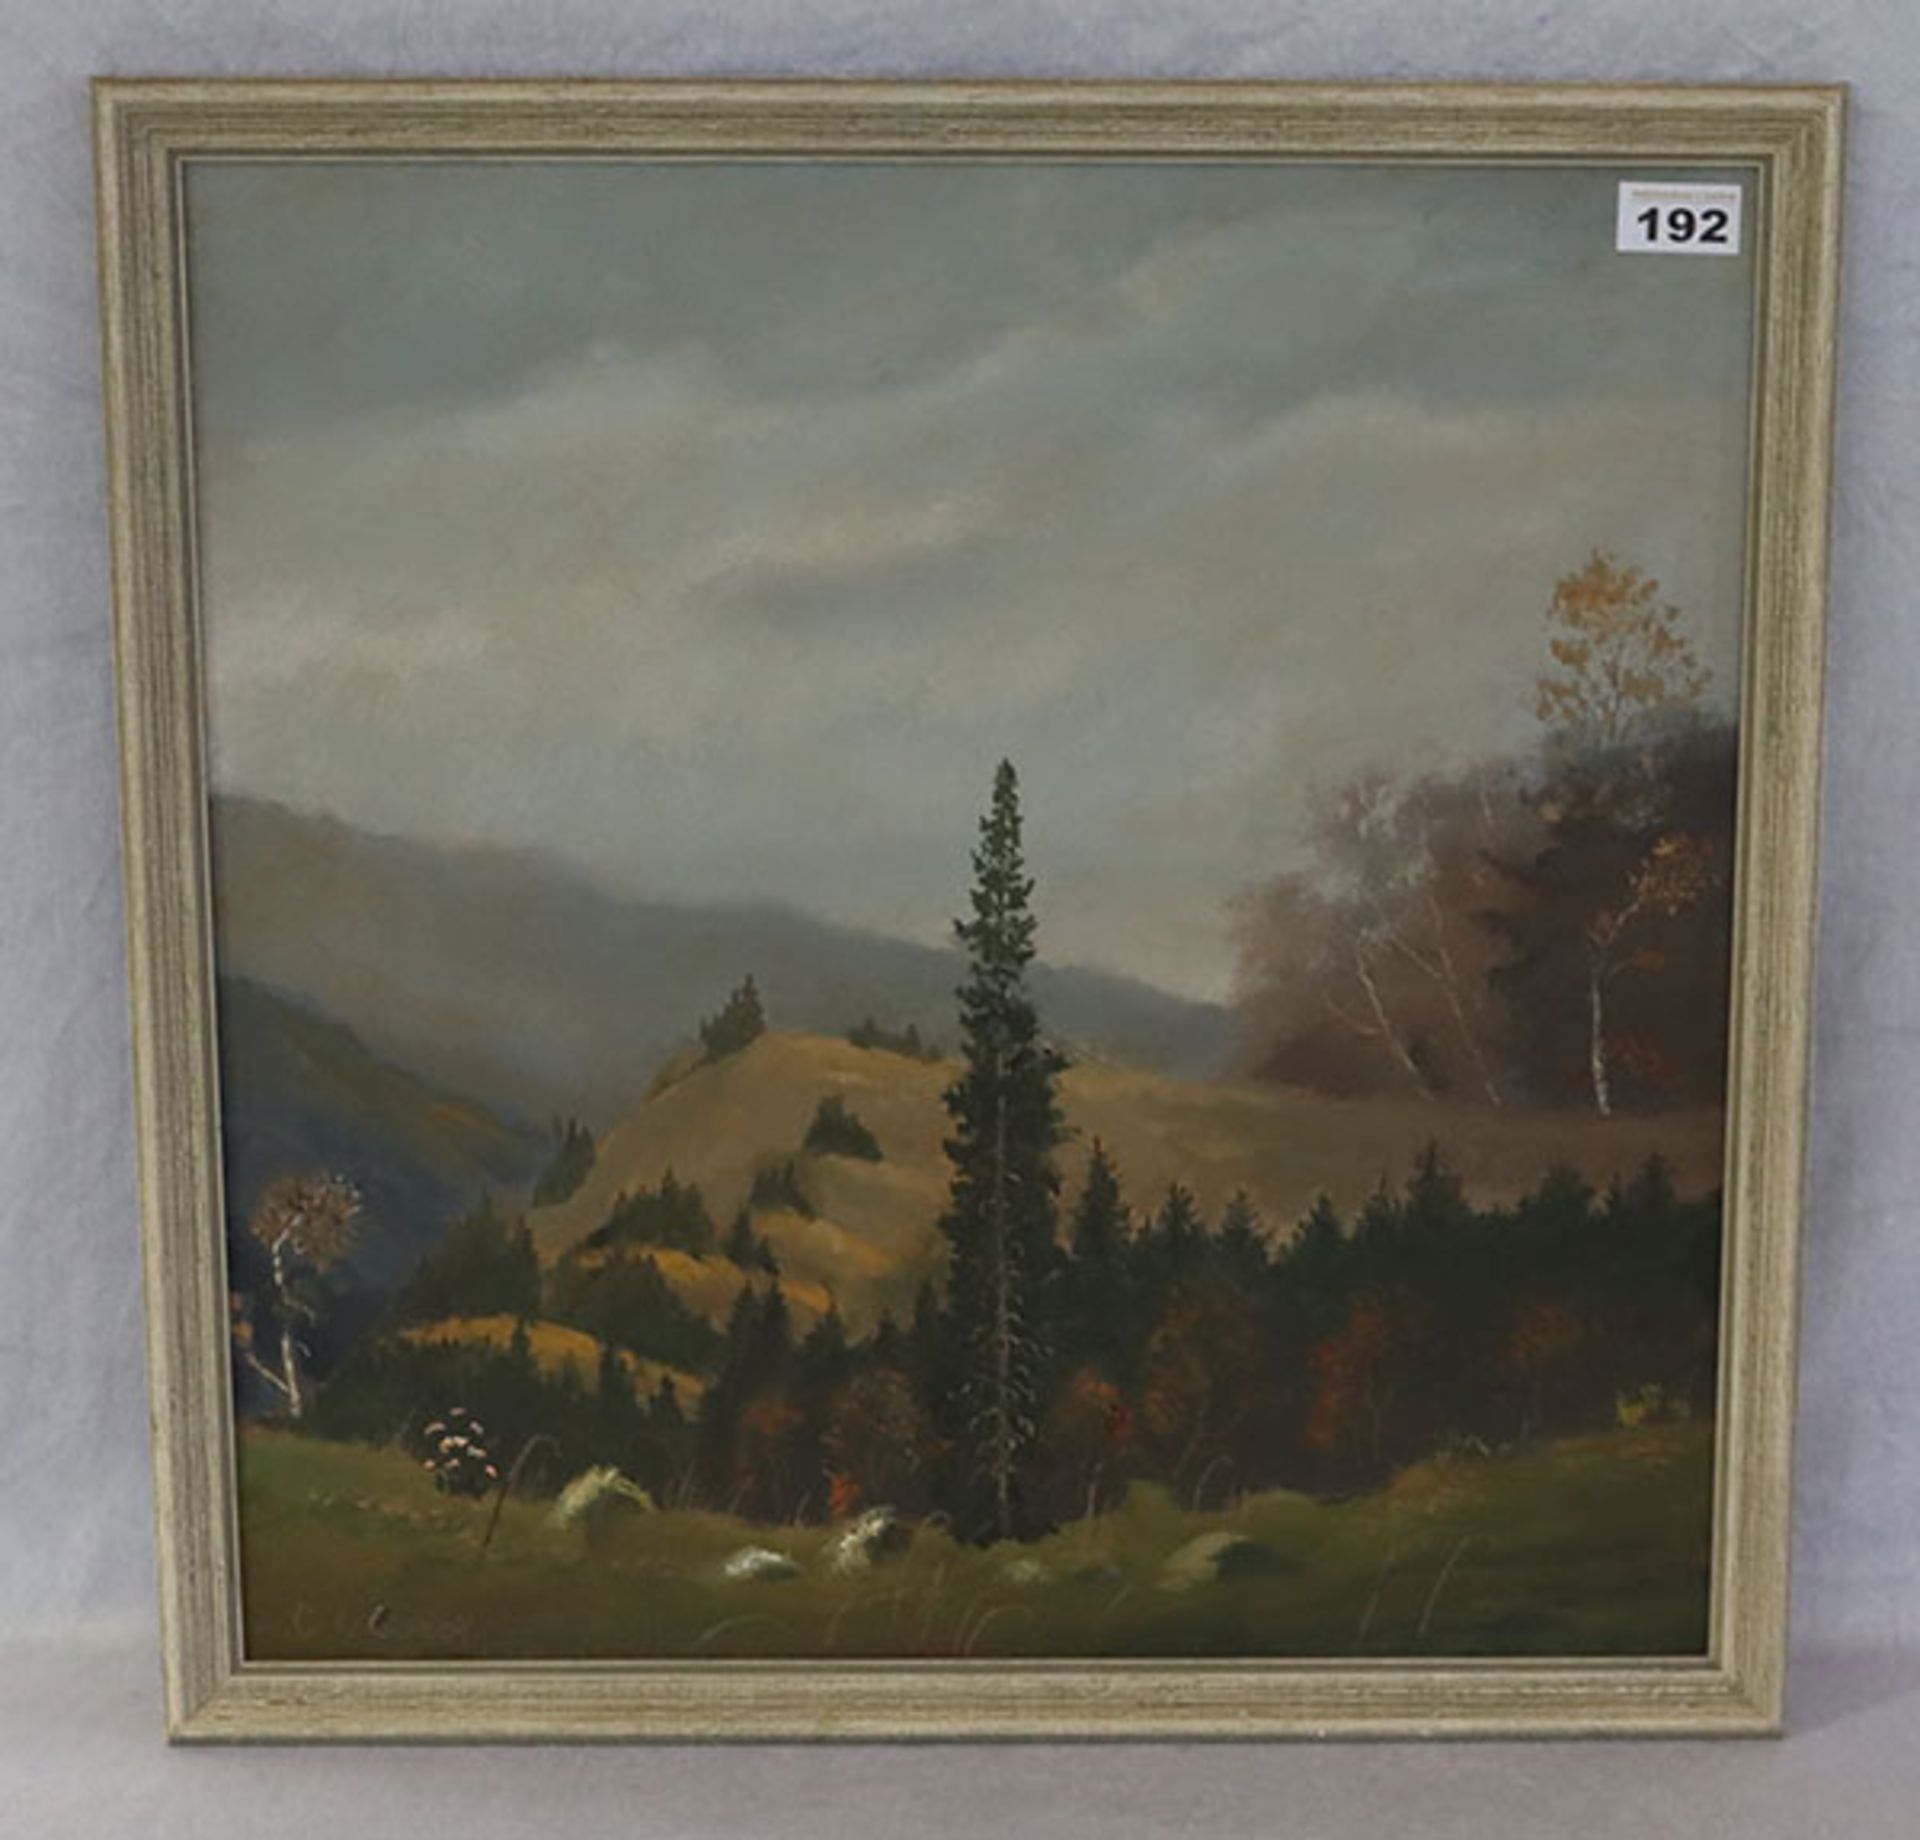 Gemälde ÖL/Hartfaser 'Aus dem Werdenfelser Land', signiert C. L. Loreck, * 14.11.1898 München + 11.